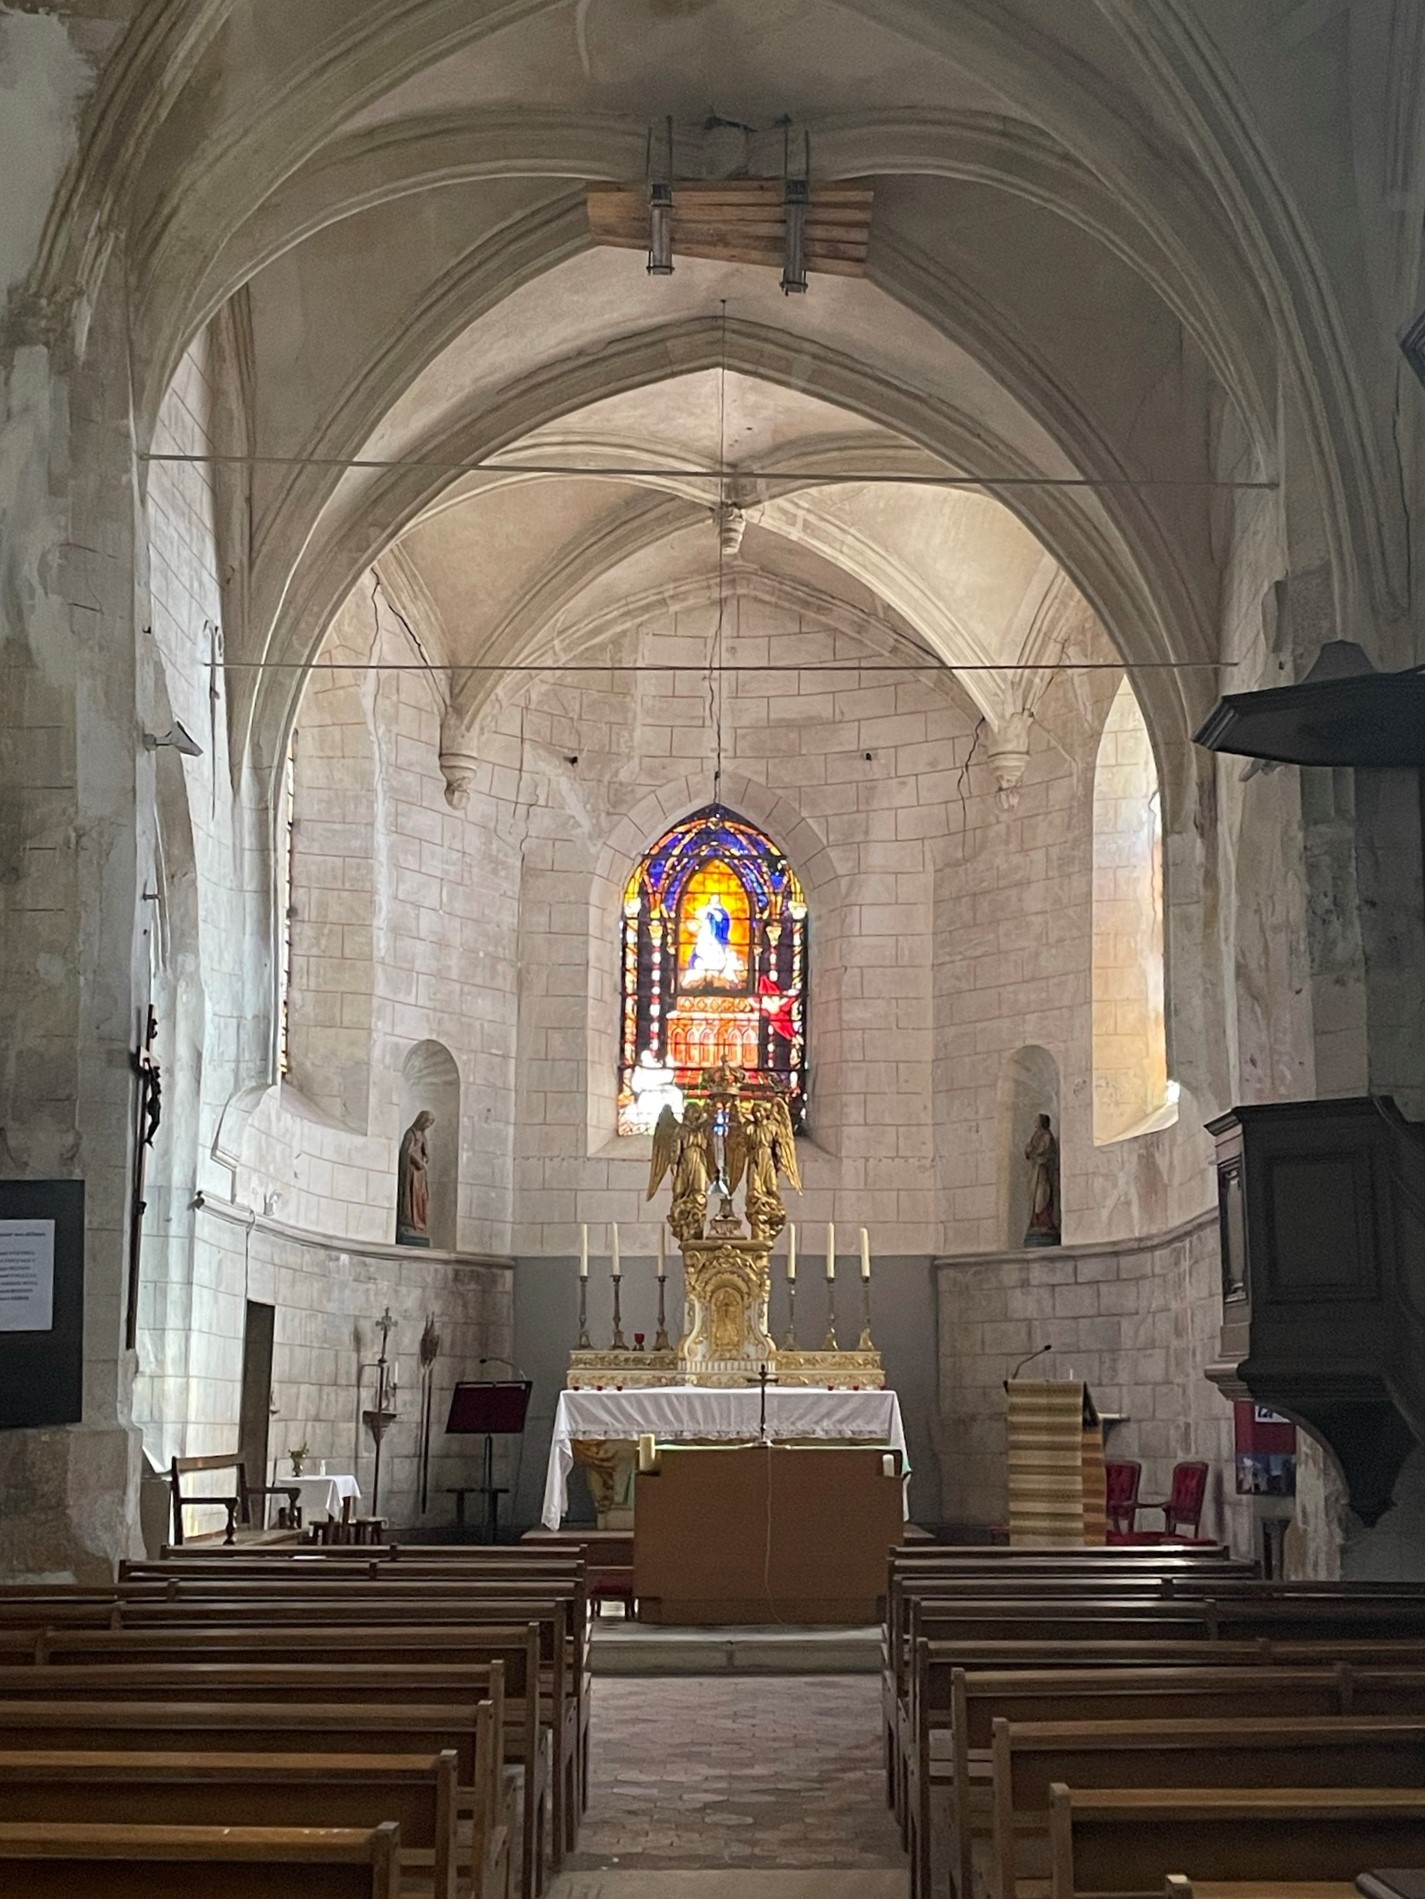 Vauhallan (91) Eglise Saint-Rigomer et Sainte-Ténestine - SAF